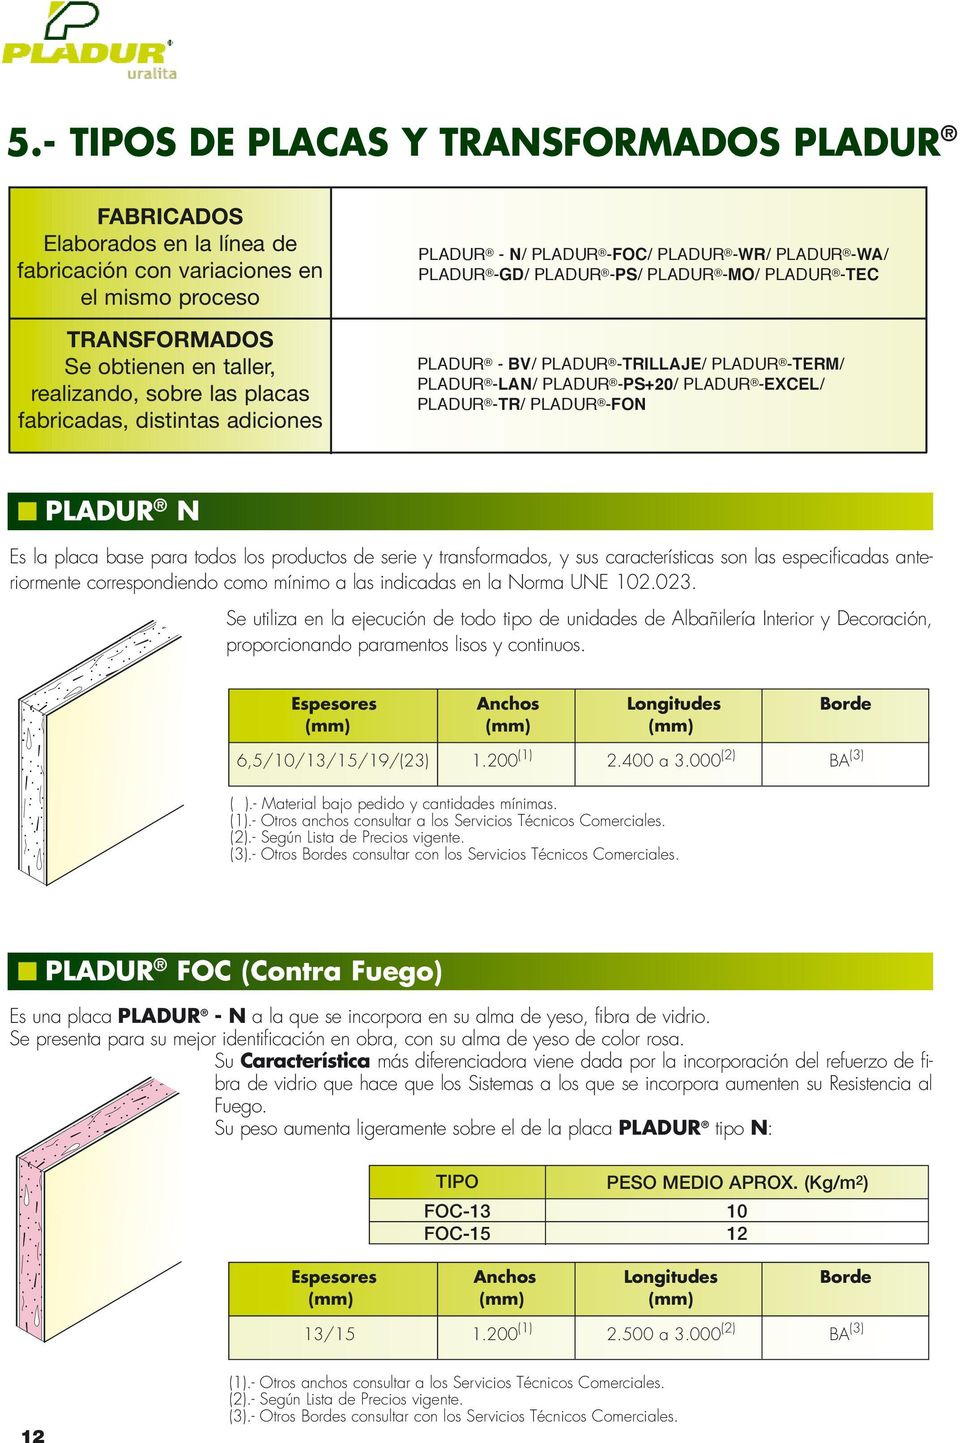 -PS+20/ PLADUR -EXCEL/ PLADUR -TR/ PLADUR -FON PLADUR N Es la placa base para todos los productos de serie y transformados, y sus características son las especificadas anteriormente correspondiendo